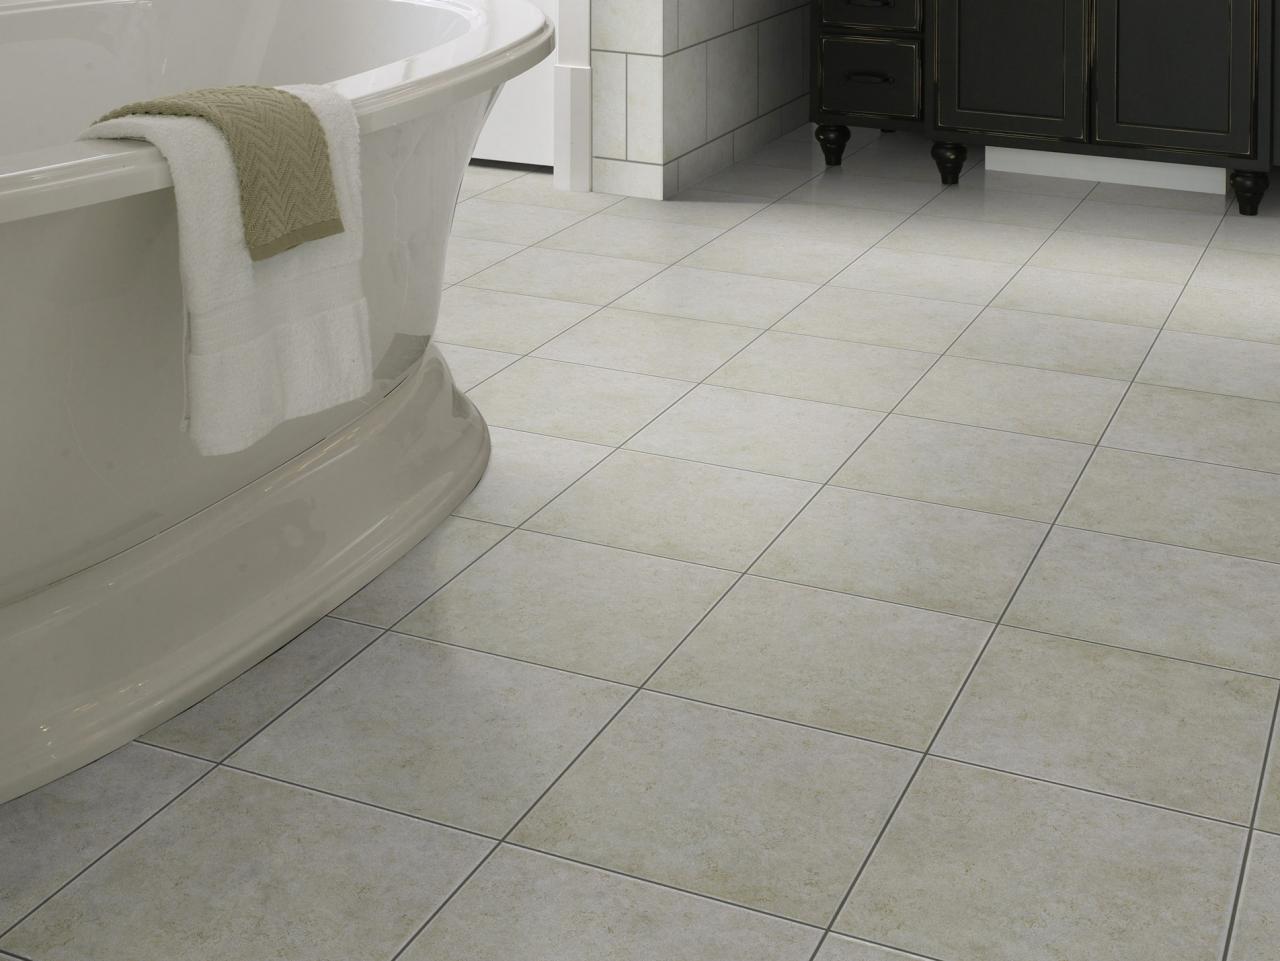 Why Homeowners Love Ceramic Tile, Bathroom Floor Tile Gallery